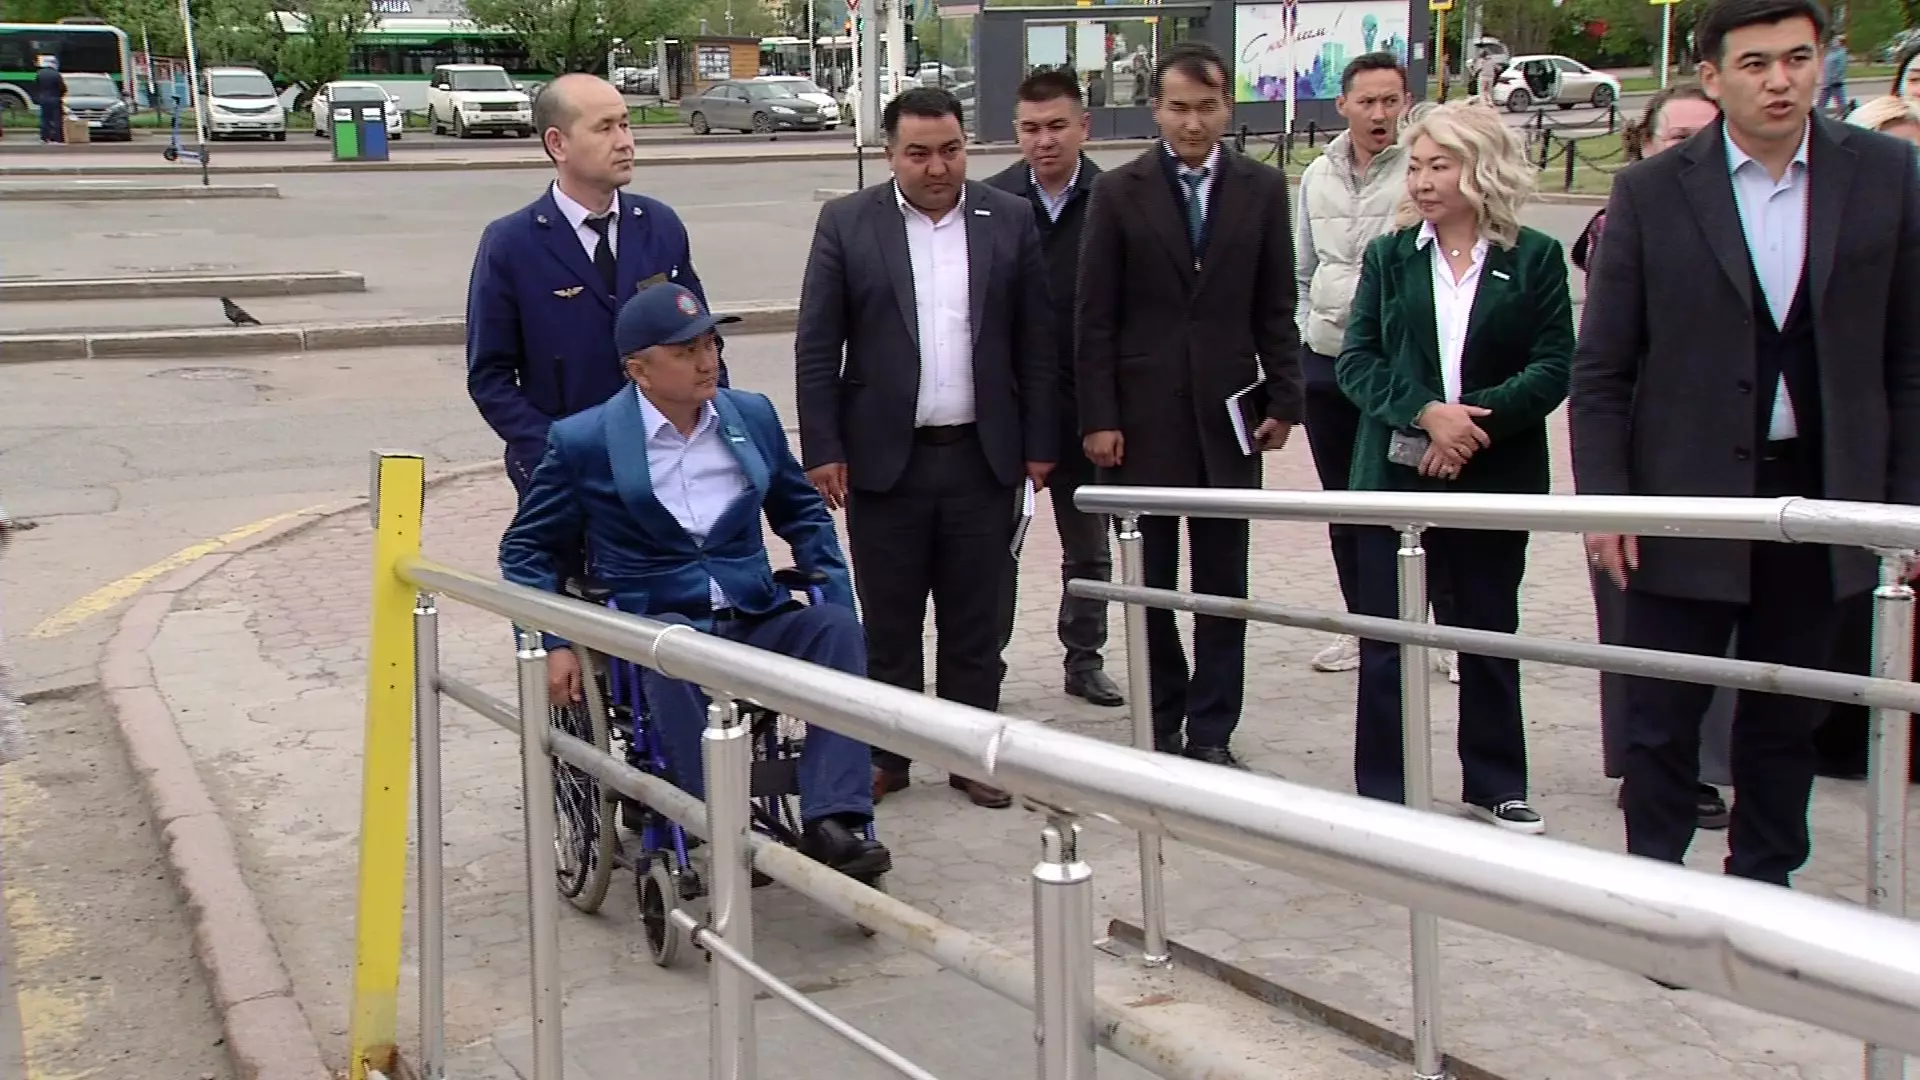 Условия для лиц с инвалидностью на жд вокзале Астаны раскритиковала партия "AMANAT"